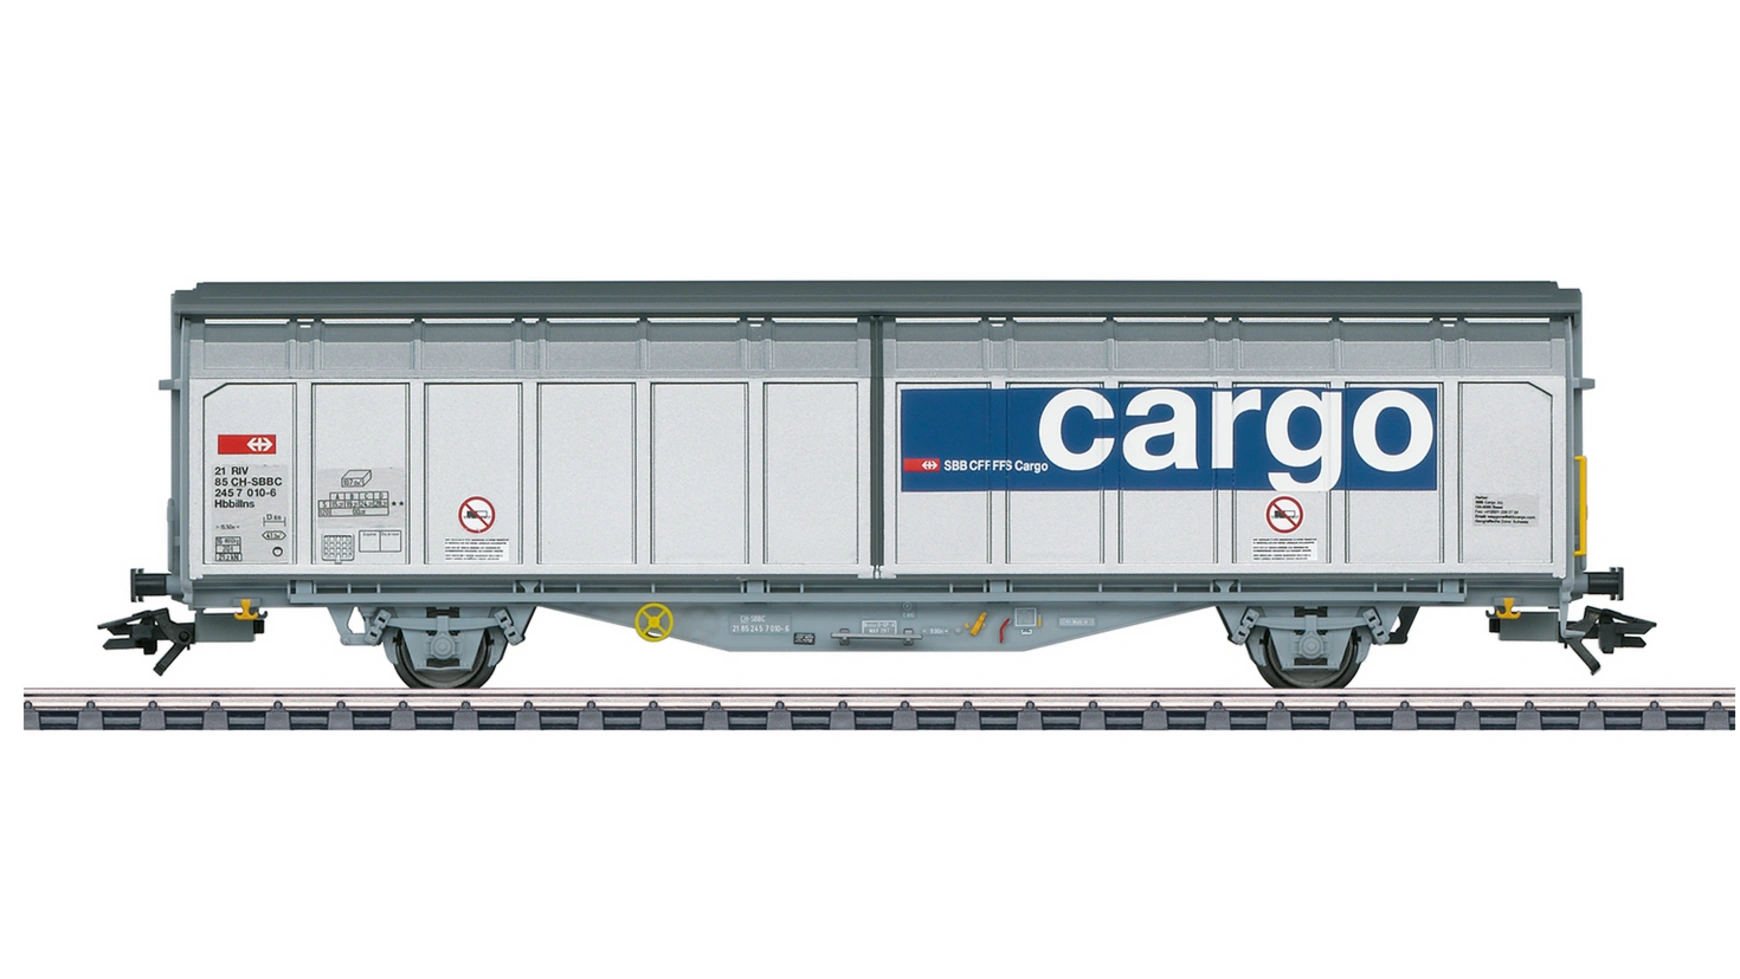 Модель железнодорожного вагона с раздвижной стенкой hbbillns Märklin модель железнодорожного вагона управления ic 2 го класса märklin